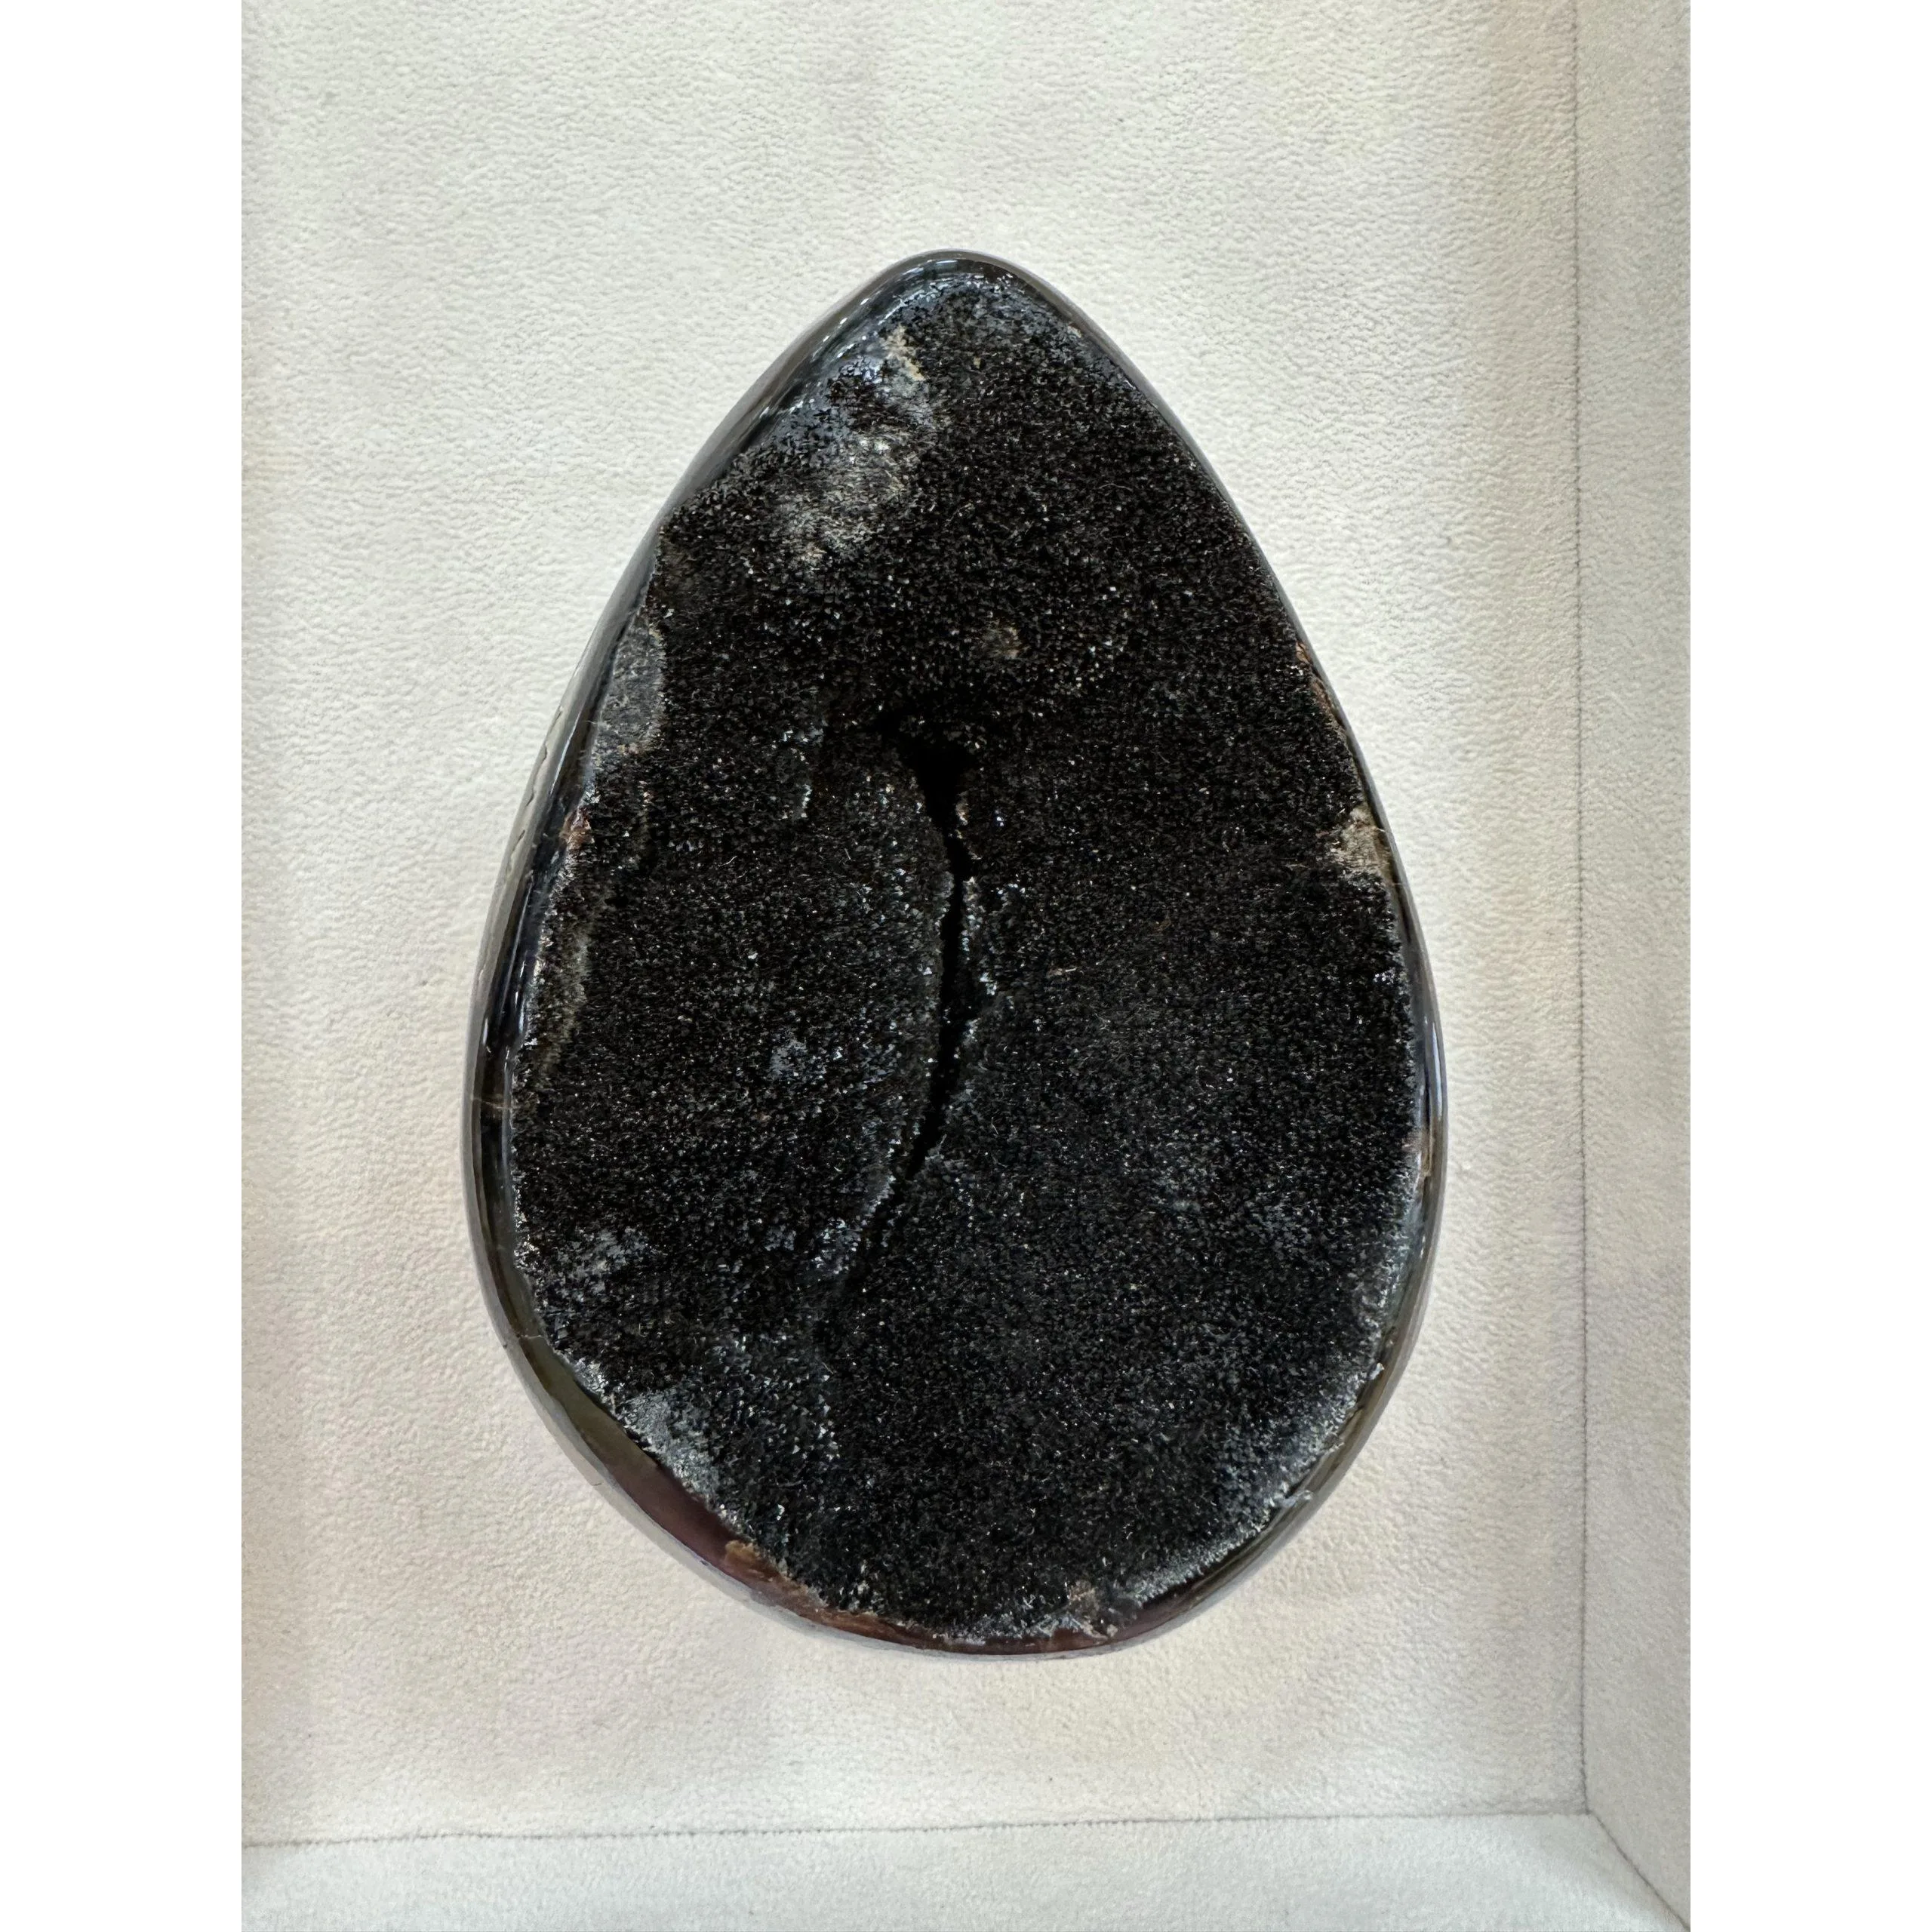 Septarian Dragon Egg –  5 inch Prehistoric Online